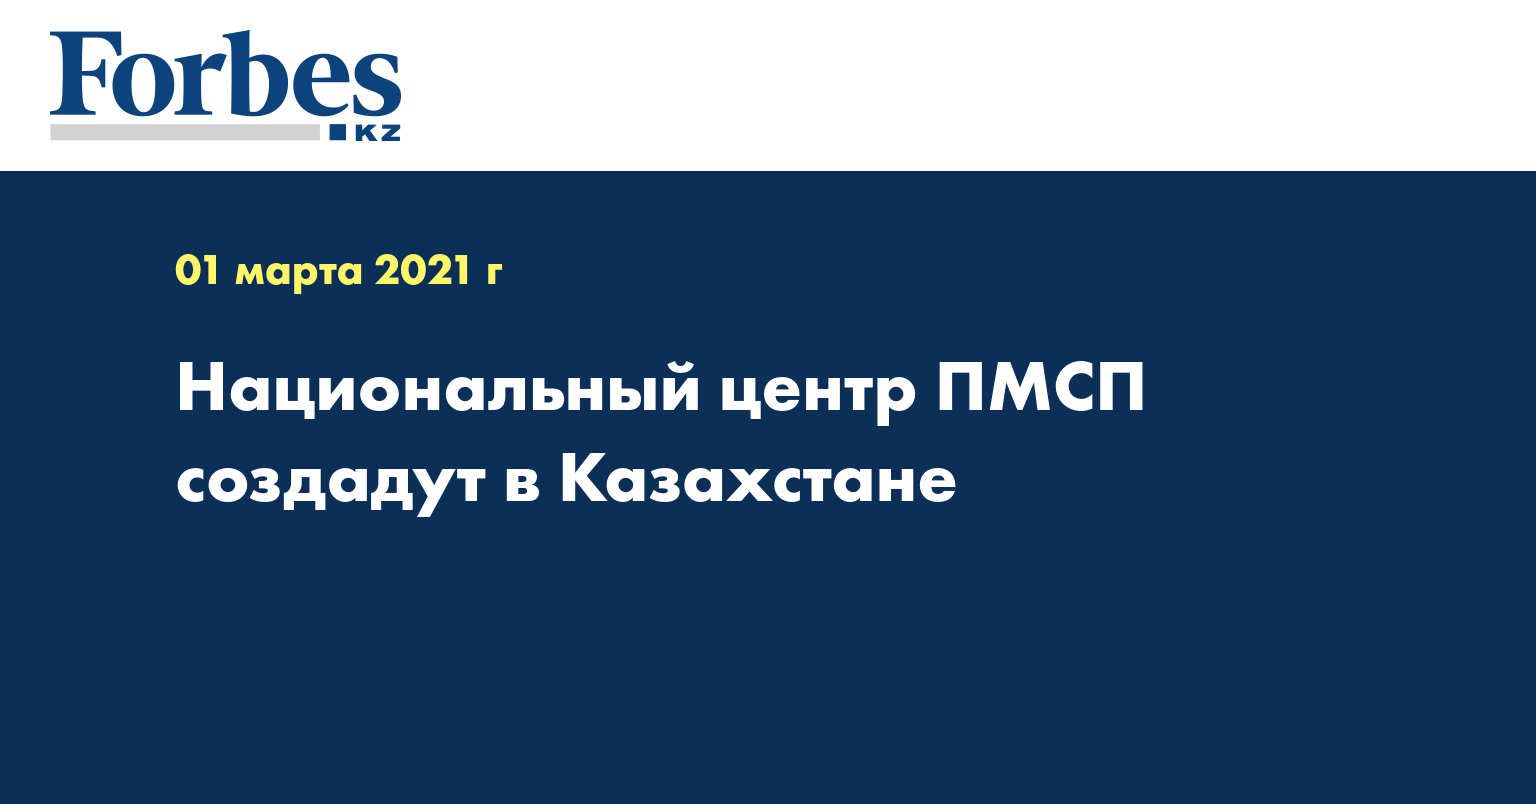 Национальный центр ПМСП создадут в Казахстане